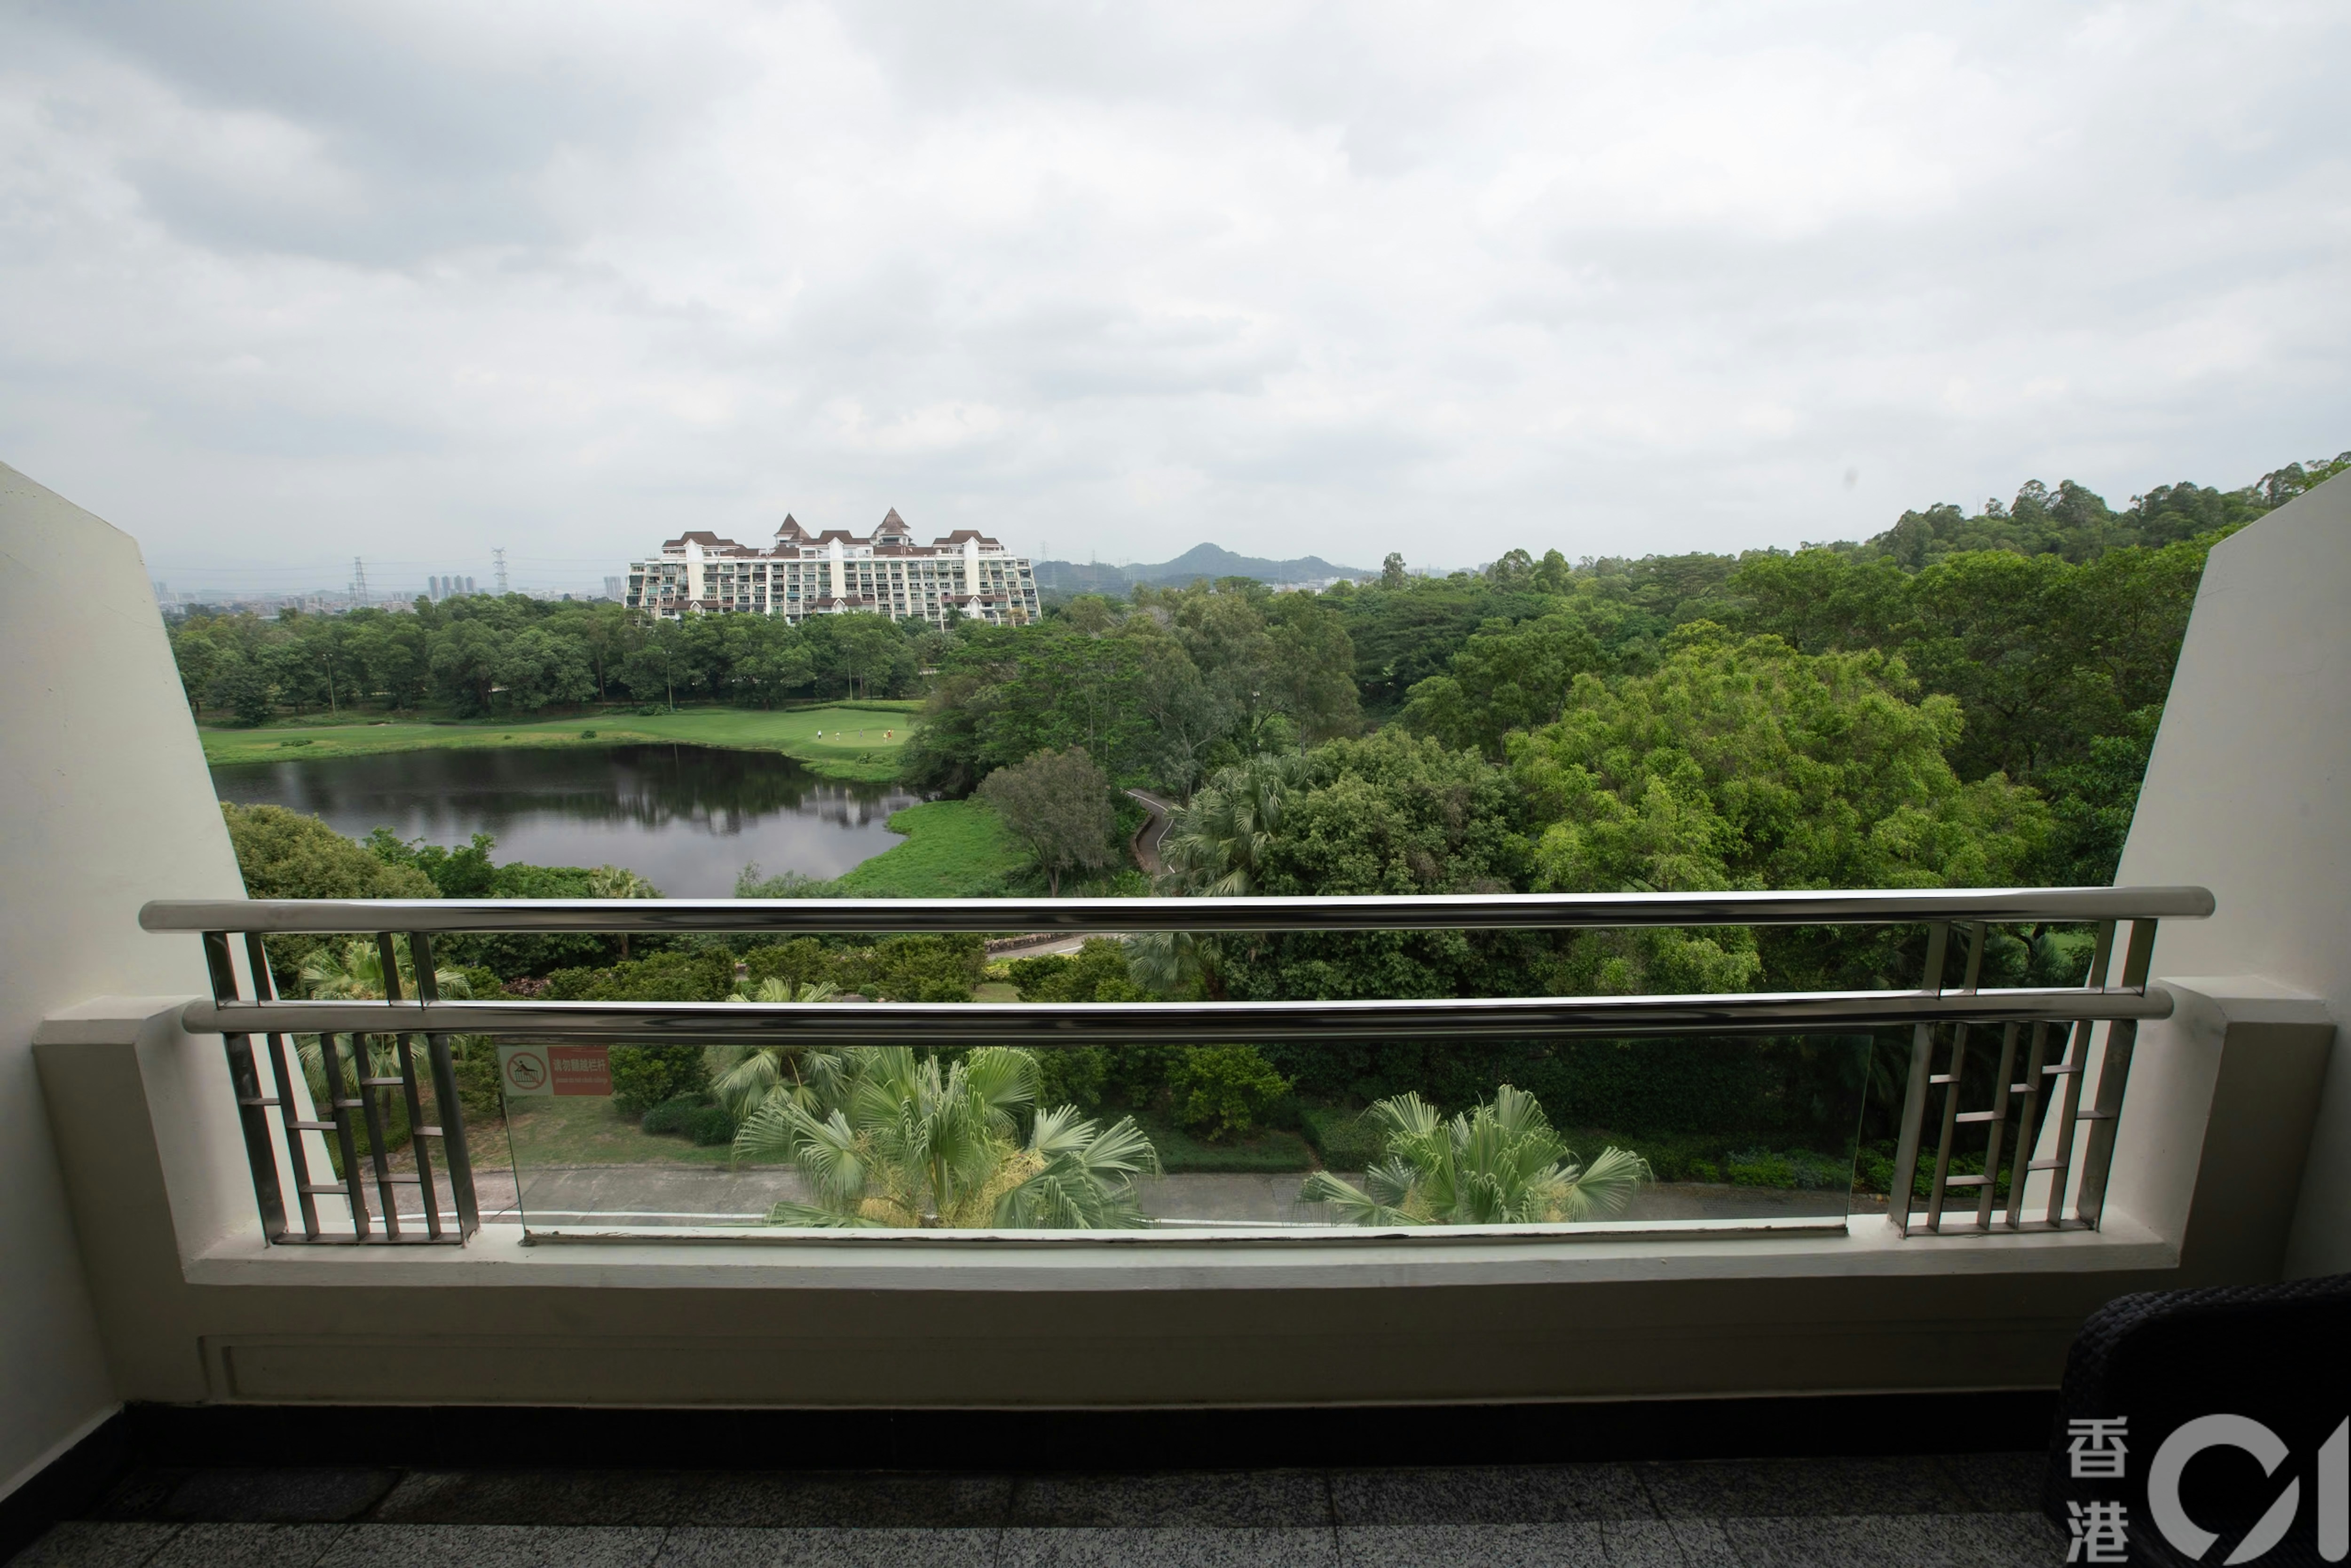 深圳观澜湖度假酒店窗外可欣赏高尔夫球场风景。（黄浩谦摄）